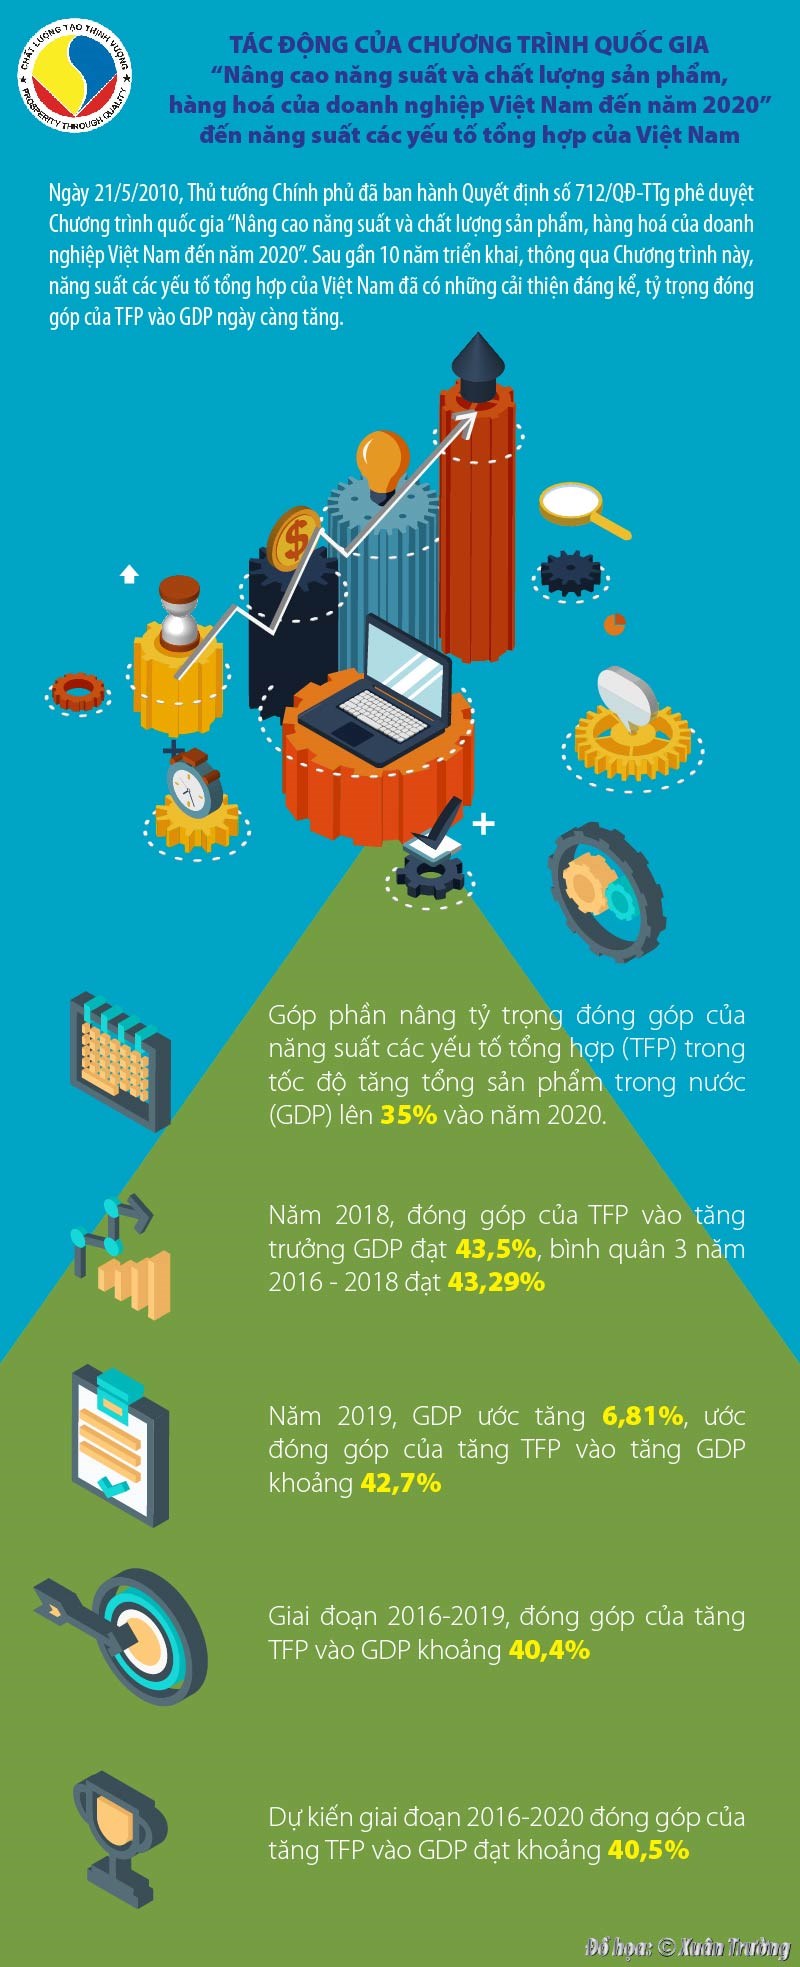 [Infographics] Tác động của của chương trình quốc gia “Nâng cao năng suất và chất lượng sản phẩm, hàng hoá của doanh nghiệp Việt Nam đến năm 2020” - Ảnh 1